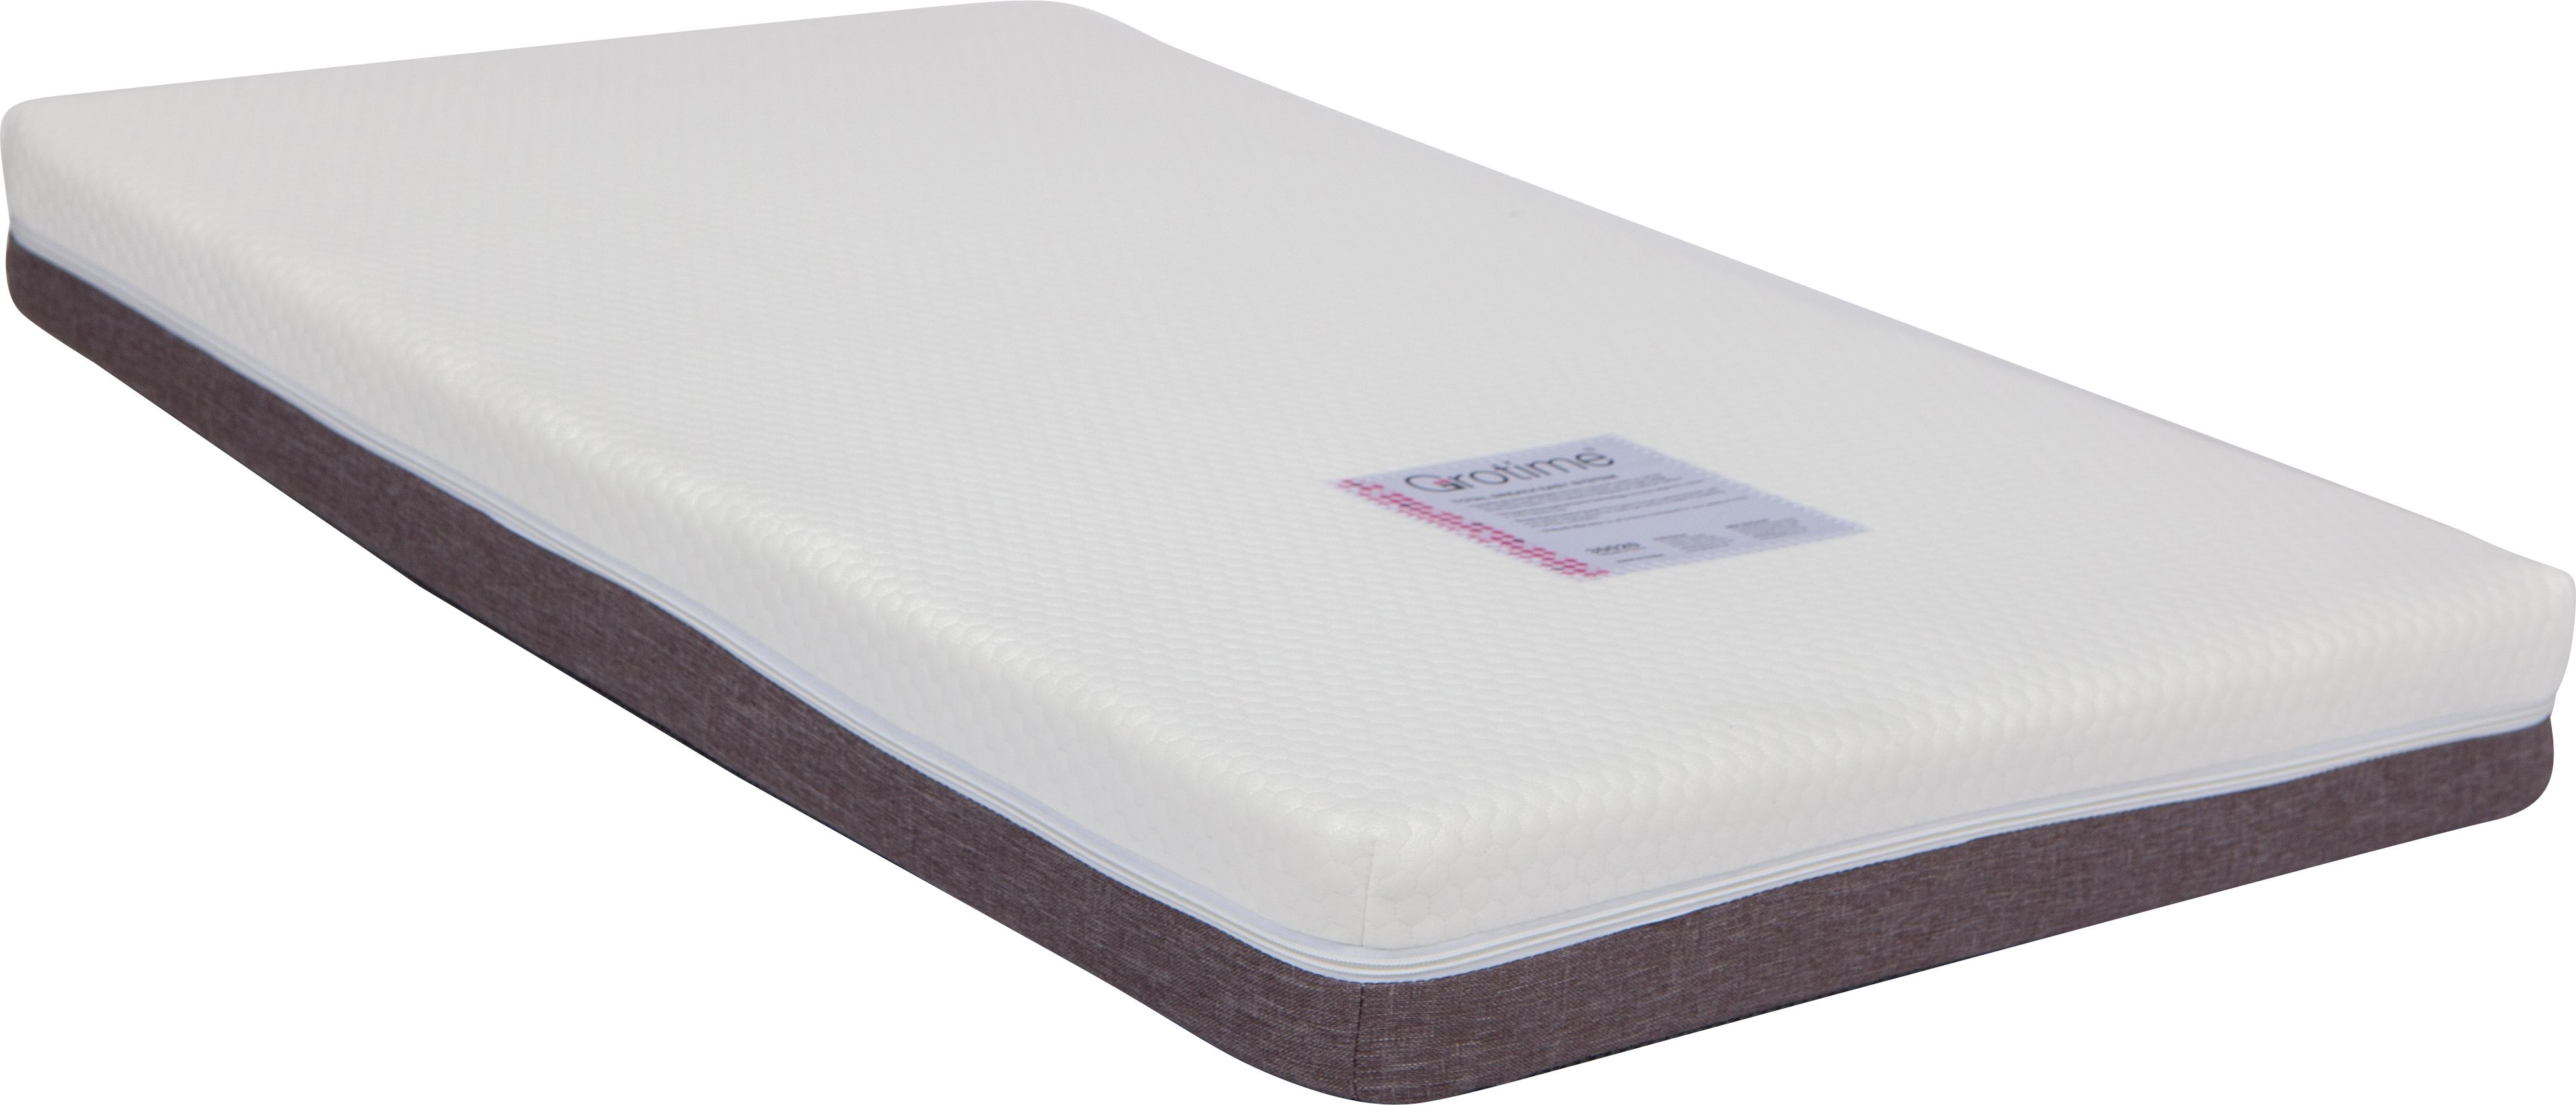 grotime bassinet mattress size